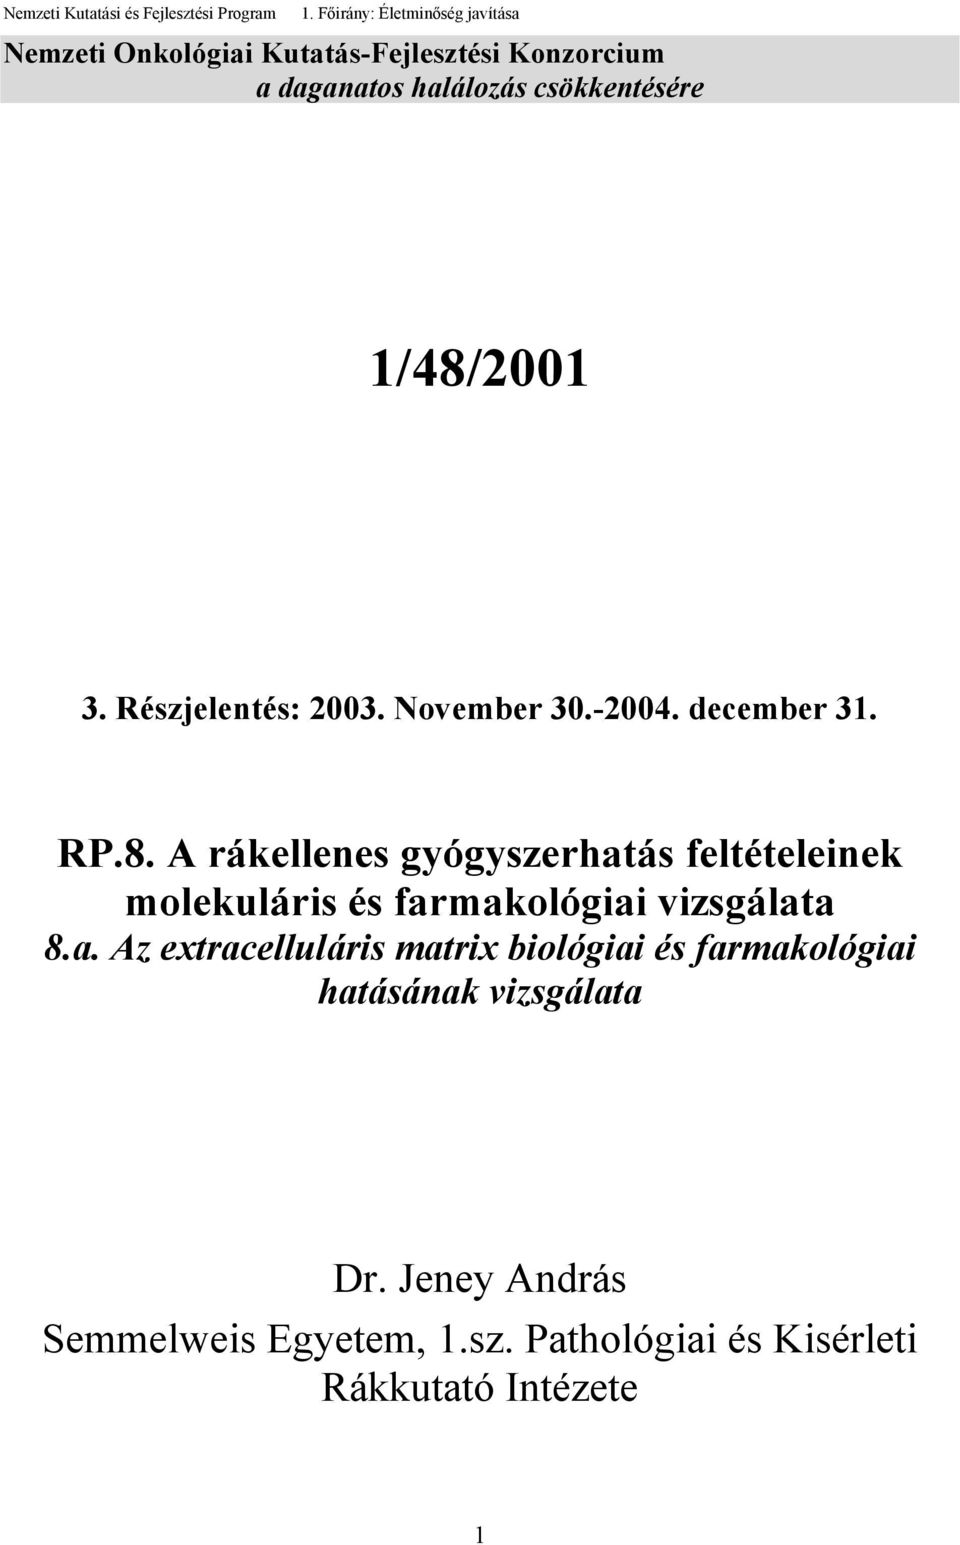 1/48/2001 3. Részjelentés: 2003. November 30.-2004. december 31. RP.8. A rákellenes gyógyszerhatás feltételeinek molekuláris és farmakológiai vizsgálata 8.